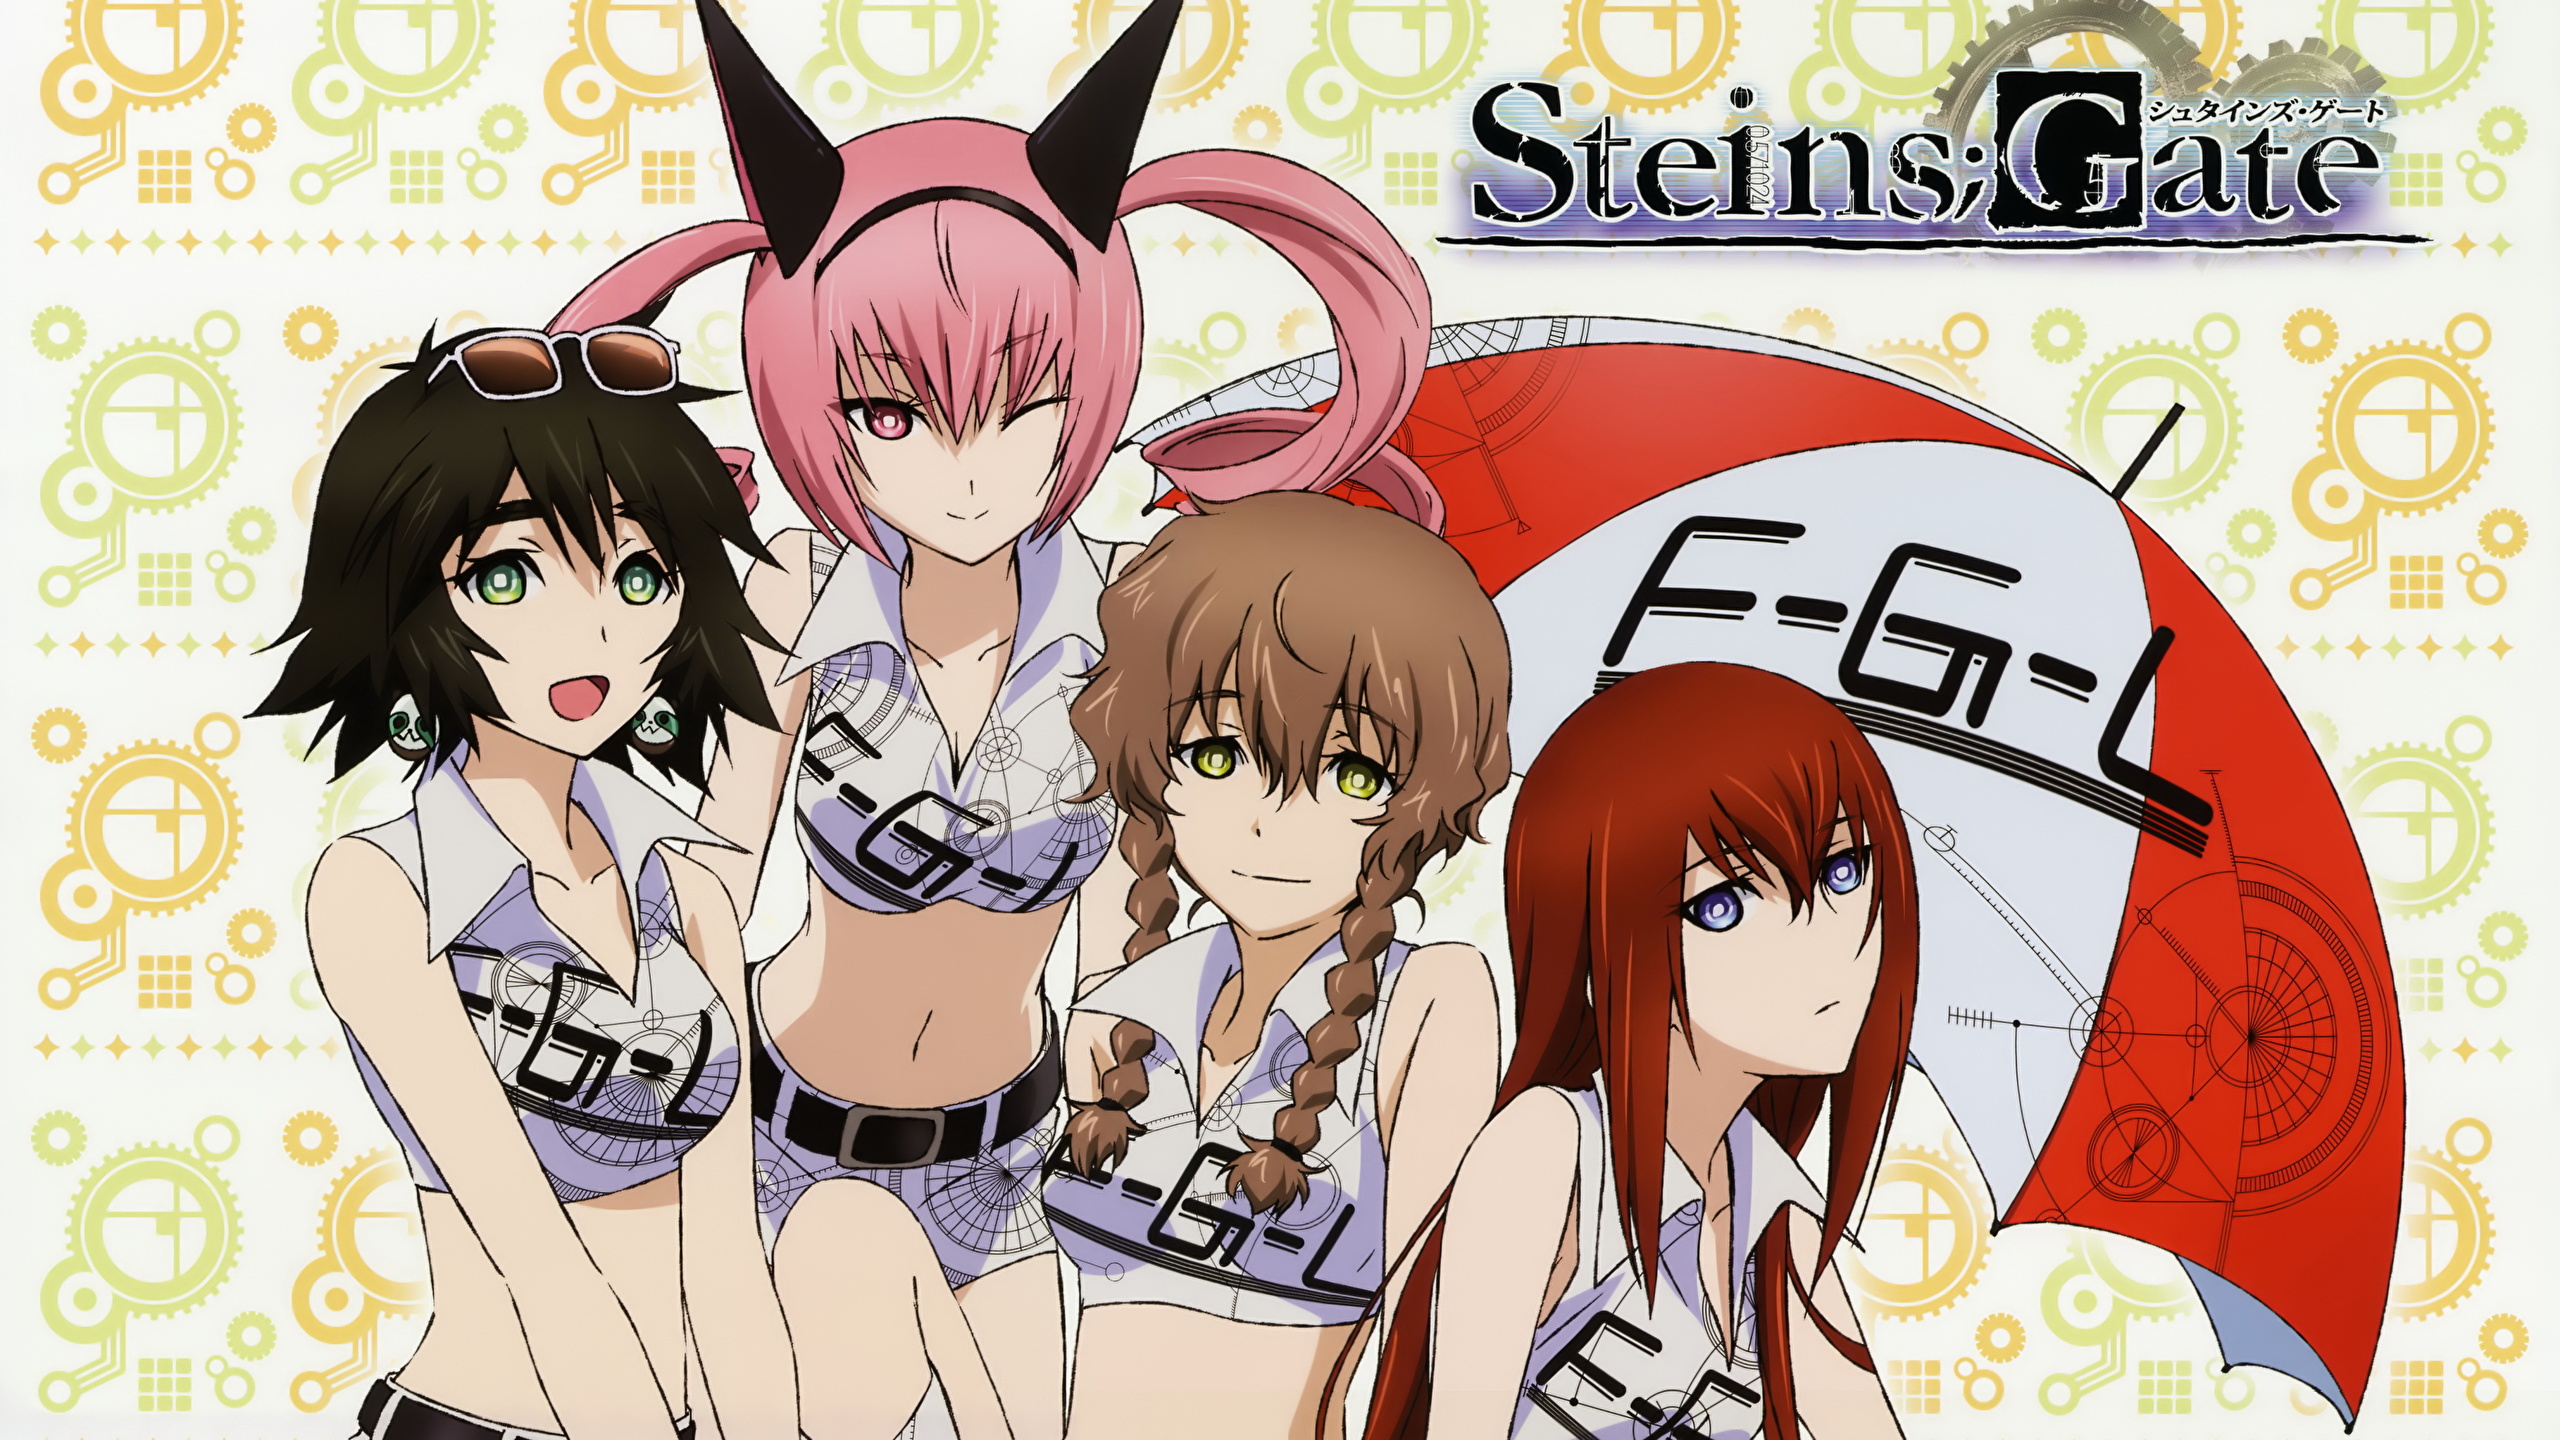 Fondos De Pantalla 2560x1440 Steins Gate Anime Chicas Descargar Imagenes